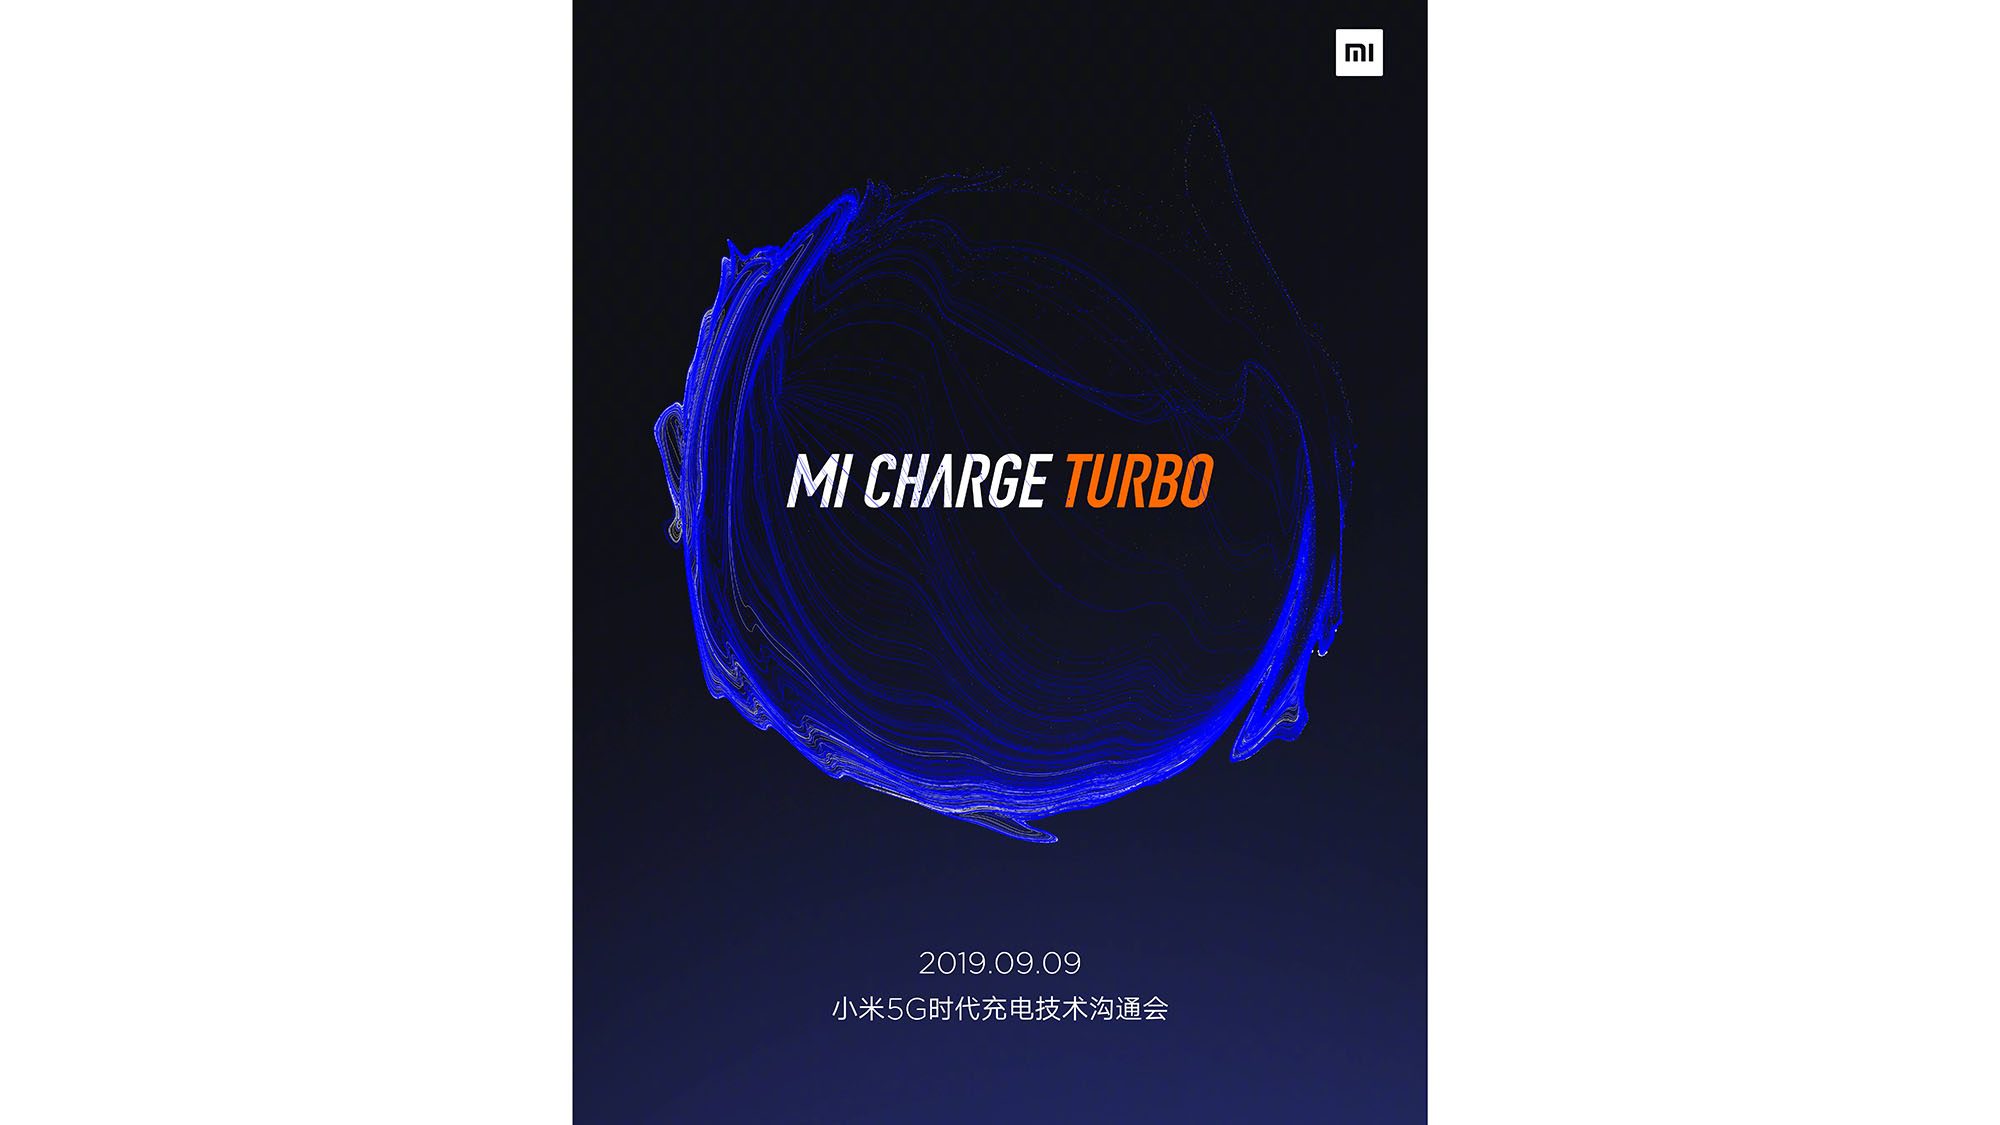 Xiaomi hé lộ về công
nghệ sạc nhanh Mi Charge Turbo trước sự kiện ngày 9 tháng 9